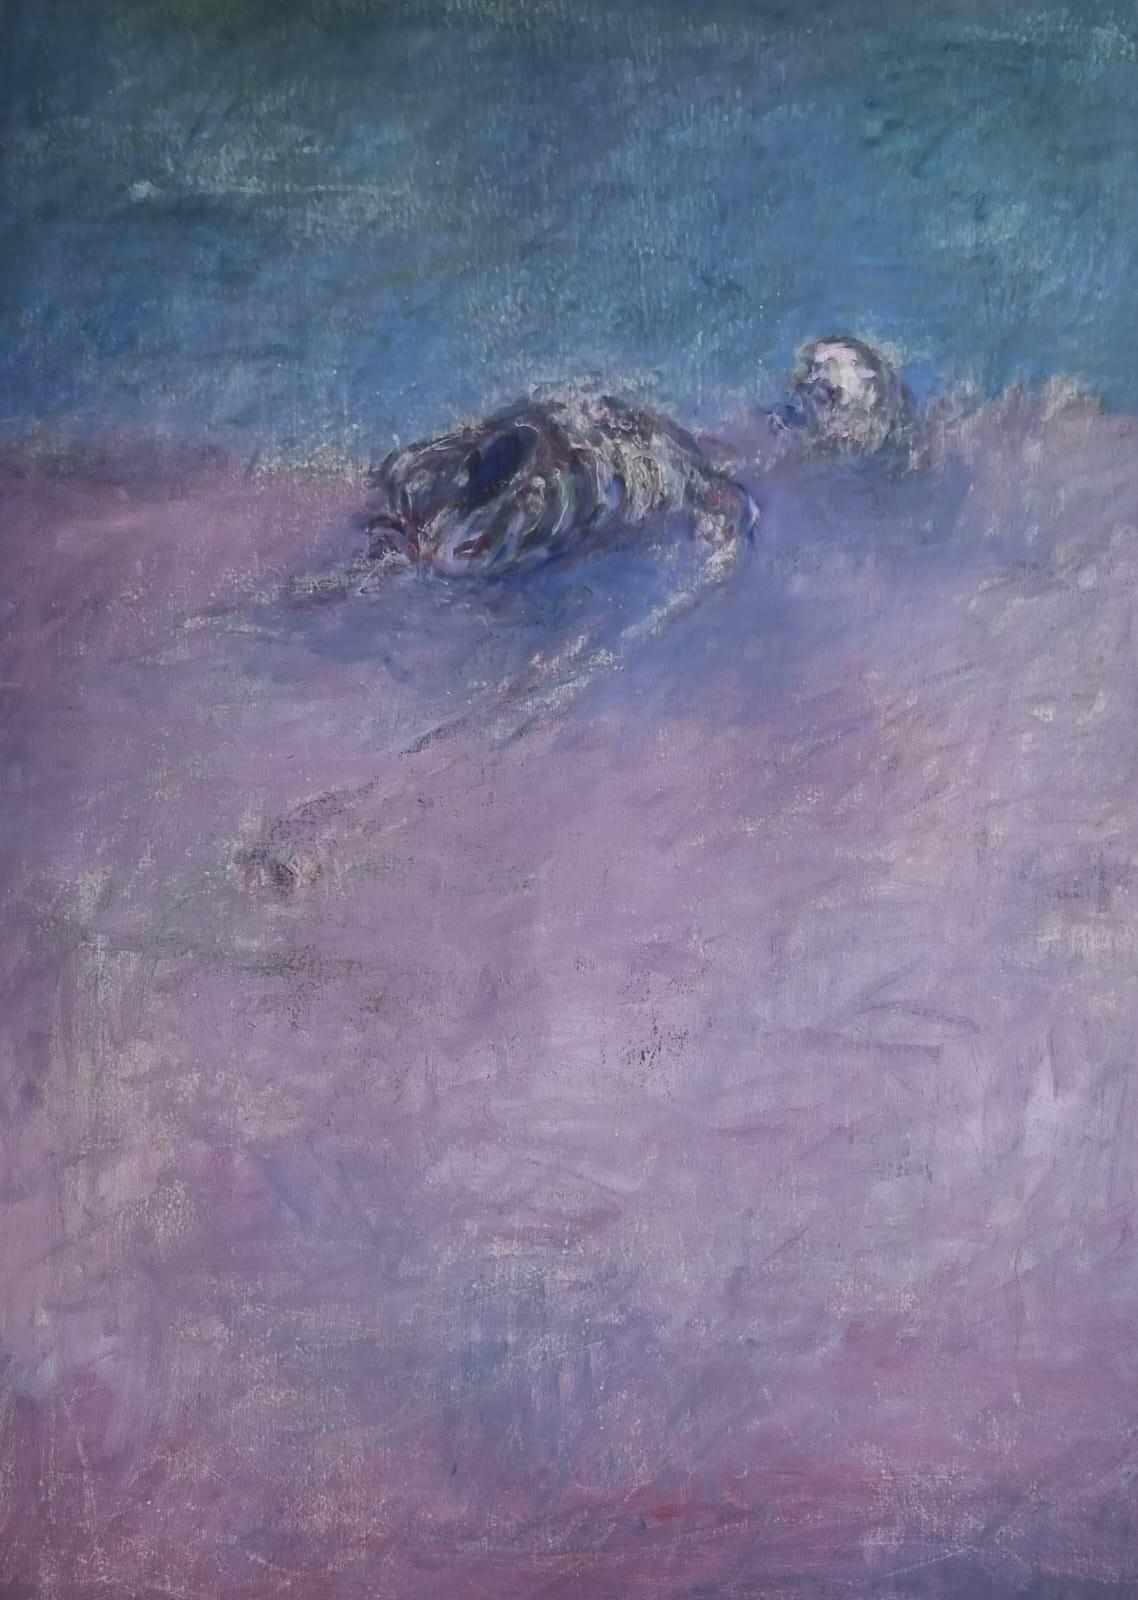 Landscape Painting Zsolt Berszán - Body in the Field 3 - Contemporain, Peinture, Bleu, Violet, 21e Siècle